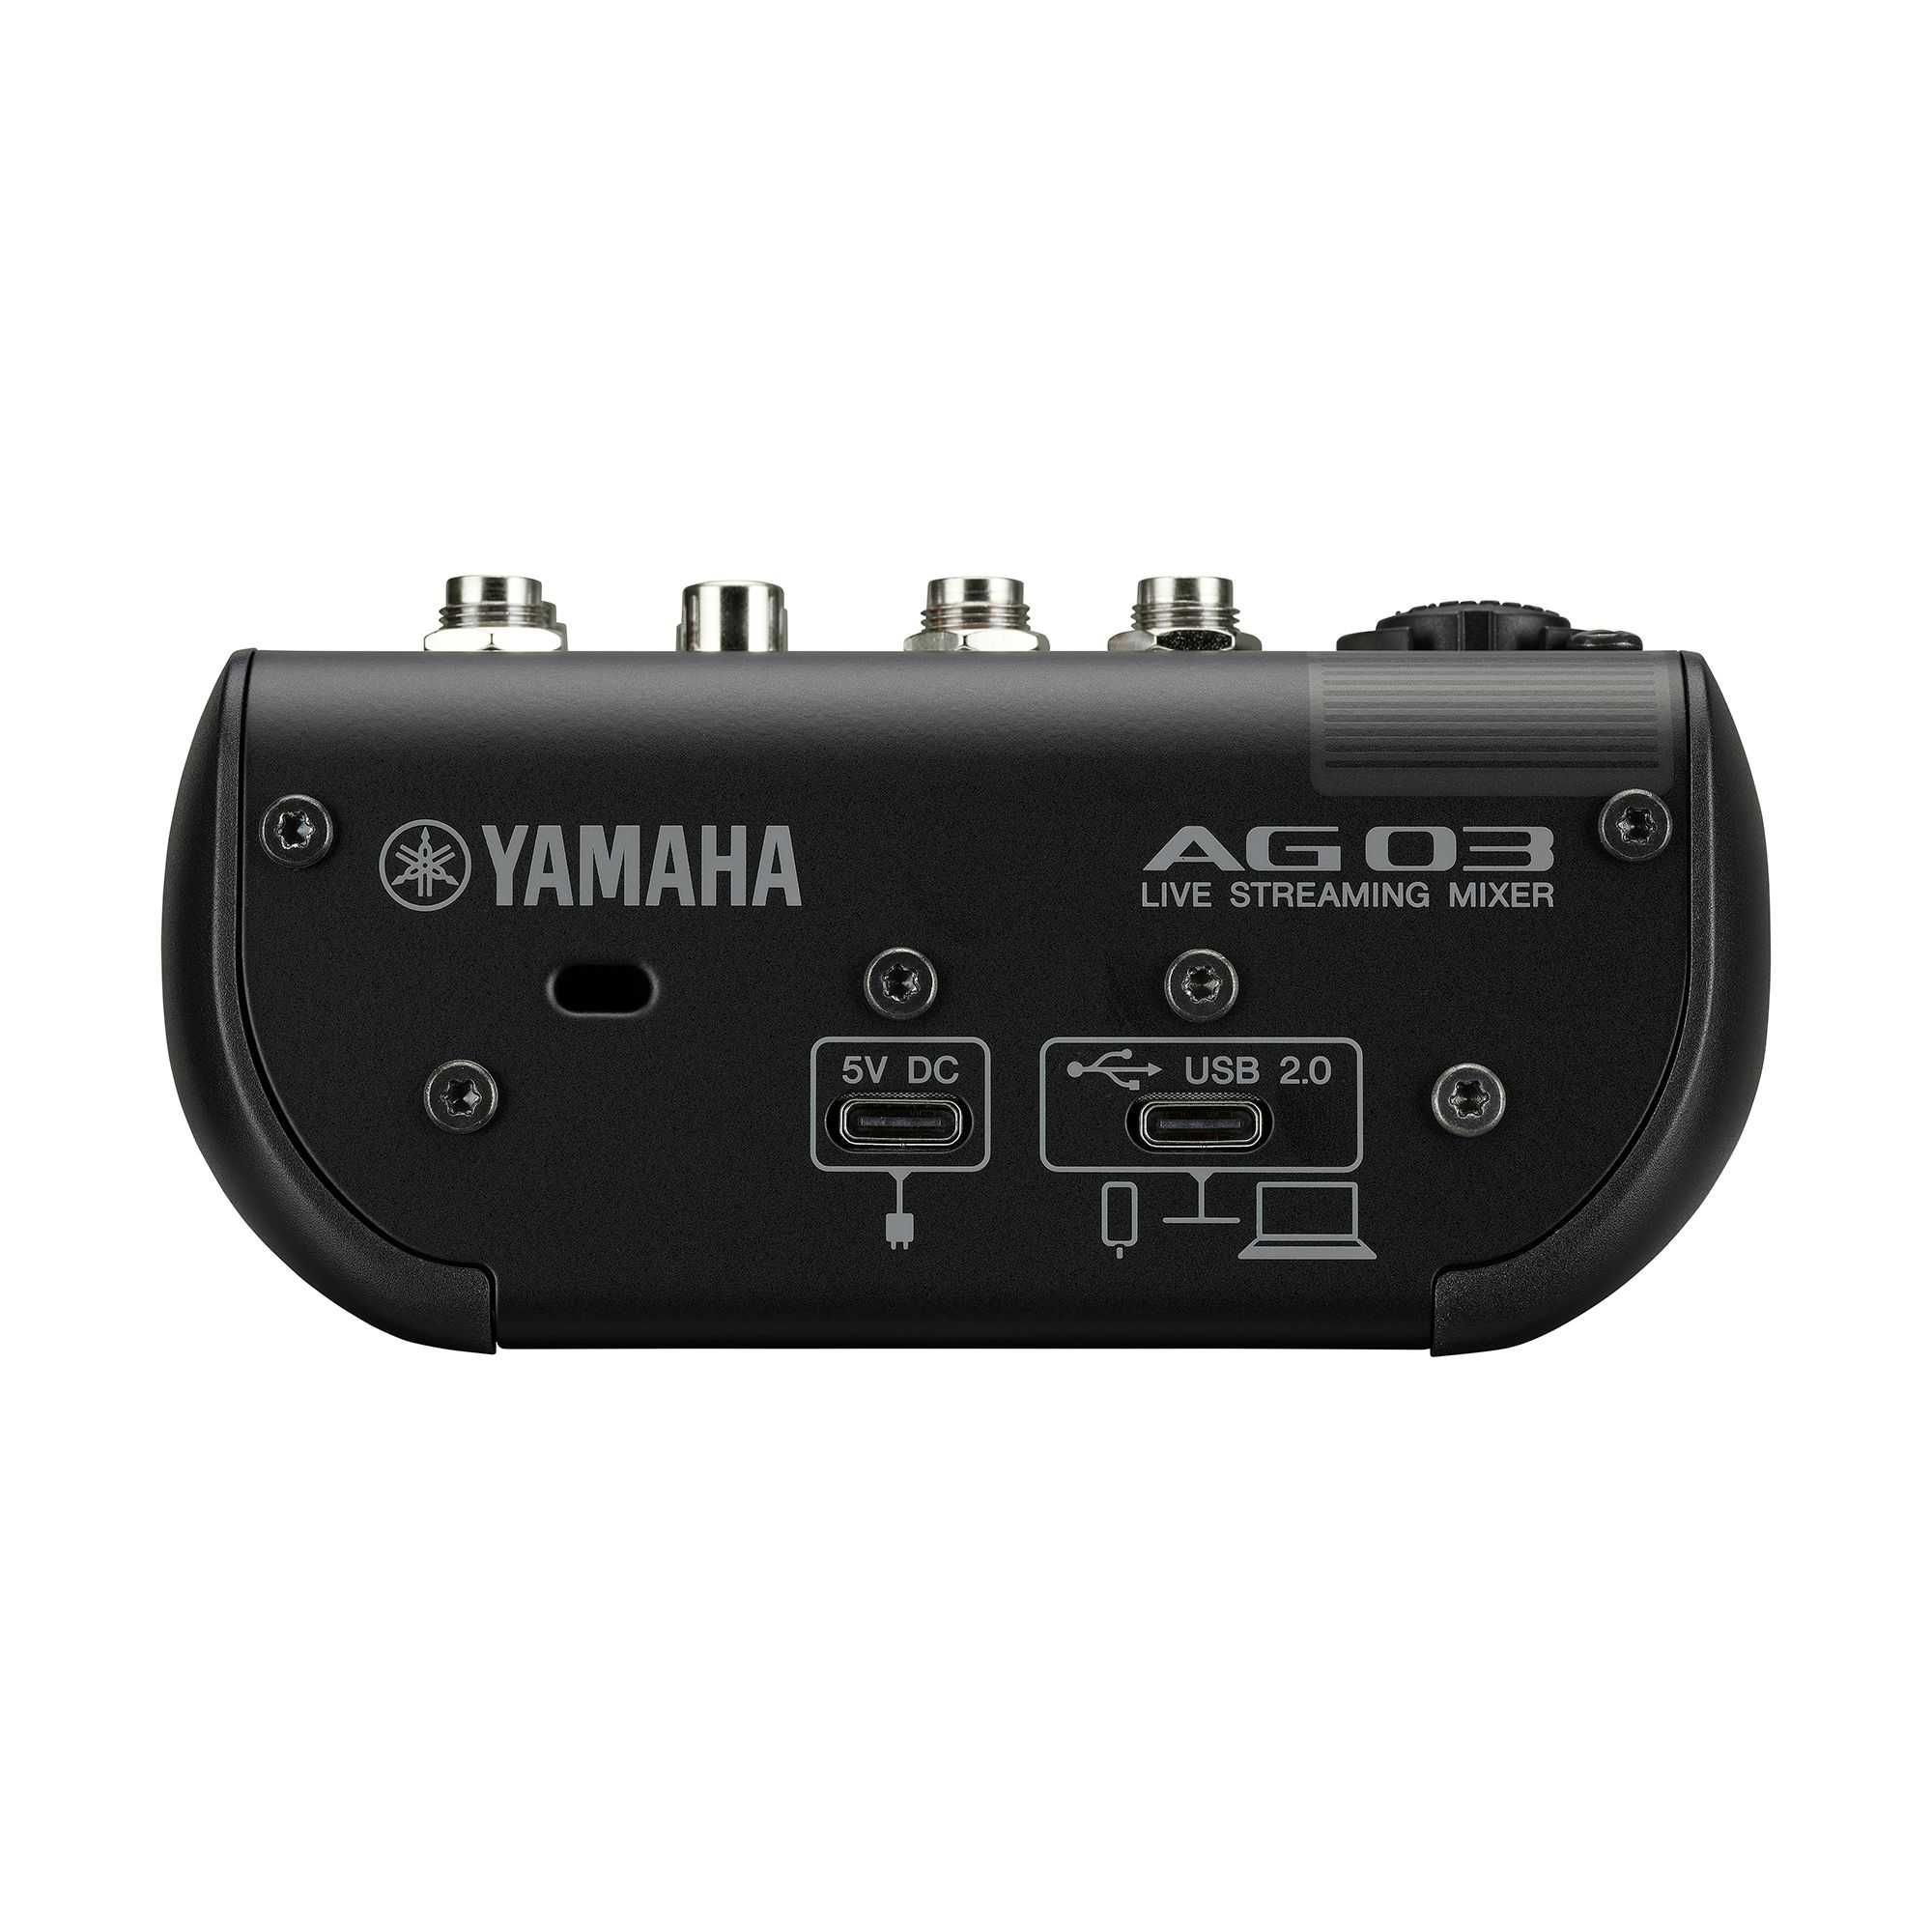 AG03MK2 аудиомикшер от Yamaha, для ютуберов, стримеров и блогеров.